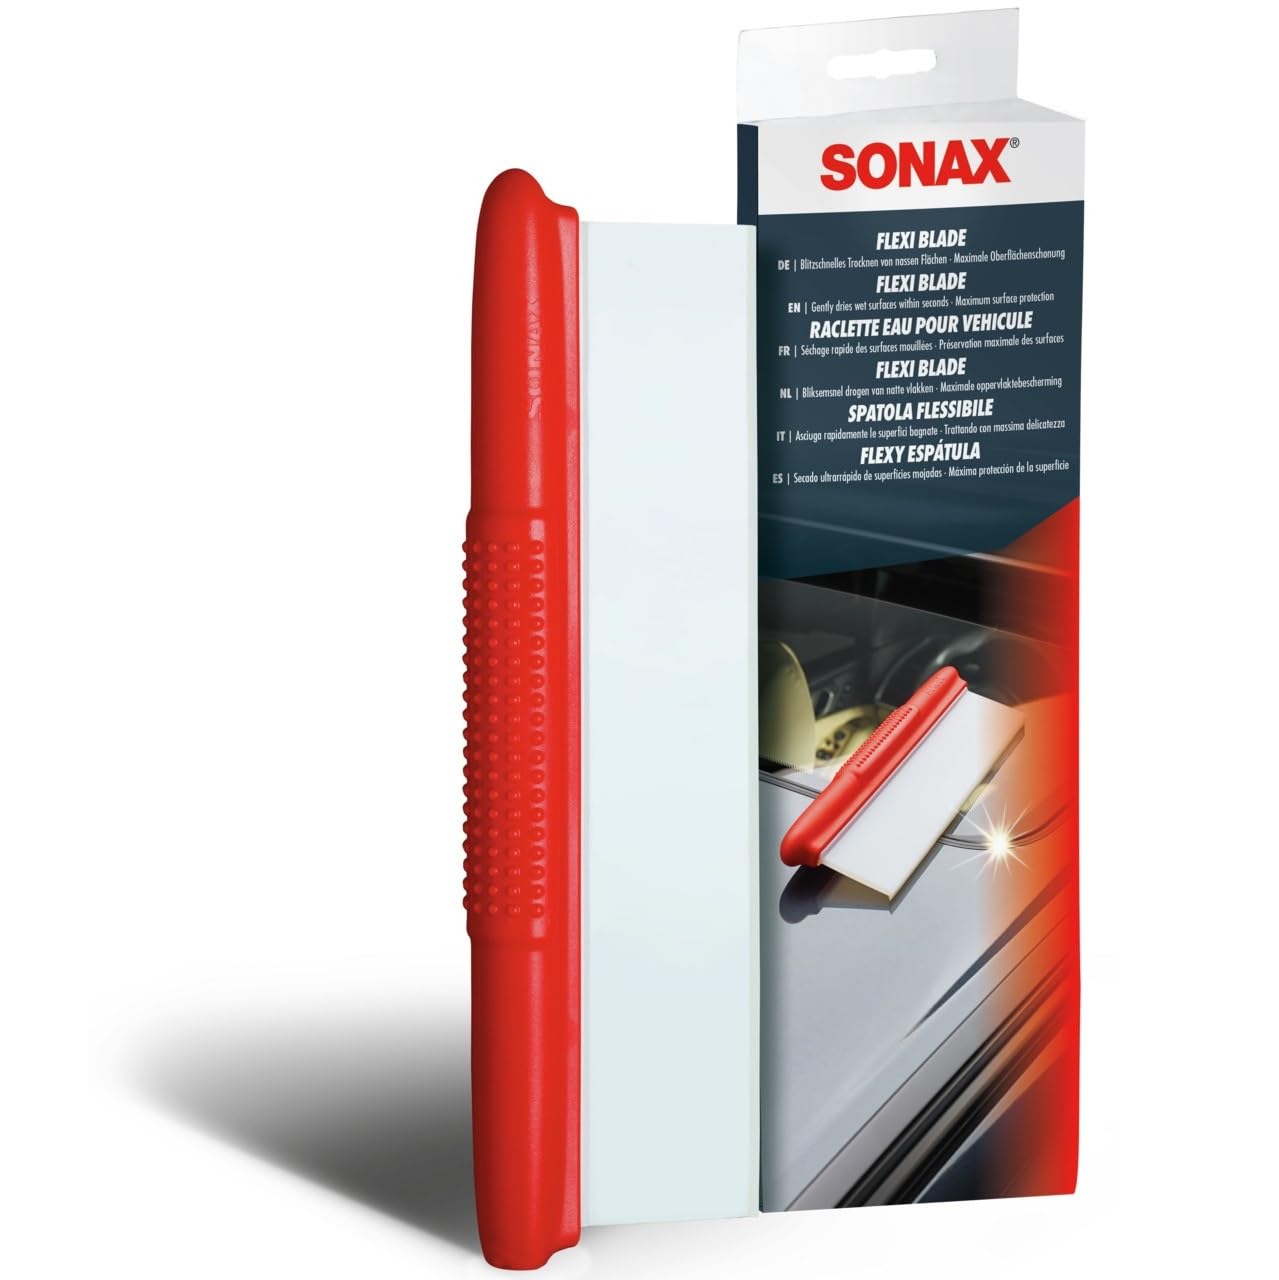 SONAX FlexiBlade (1 Stück) blitzschnelles Trocknen von nassen Flächen bei maximaler Oberflächenschonung | Art-Nr. 04174000 von SONAX